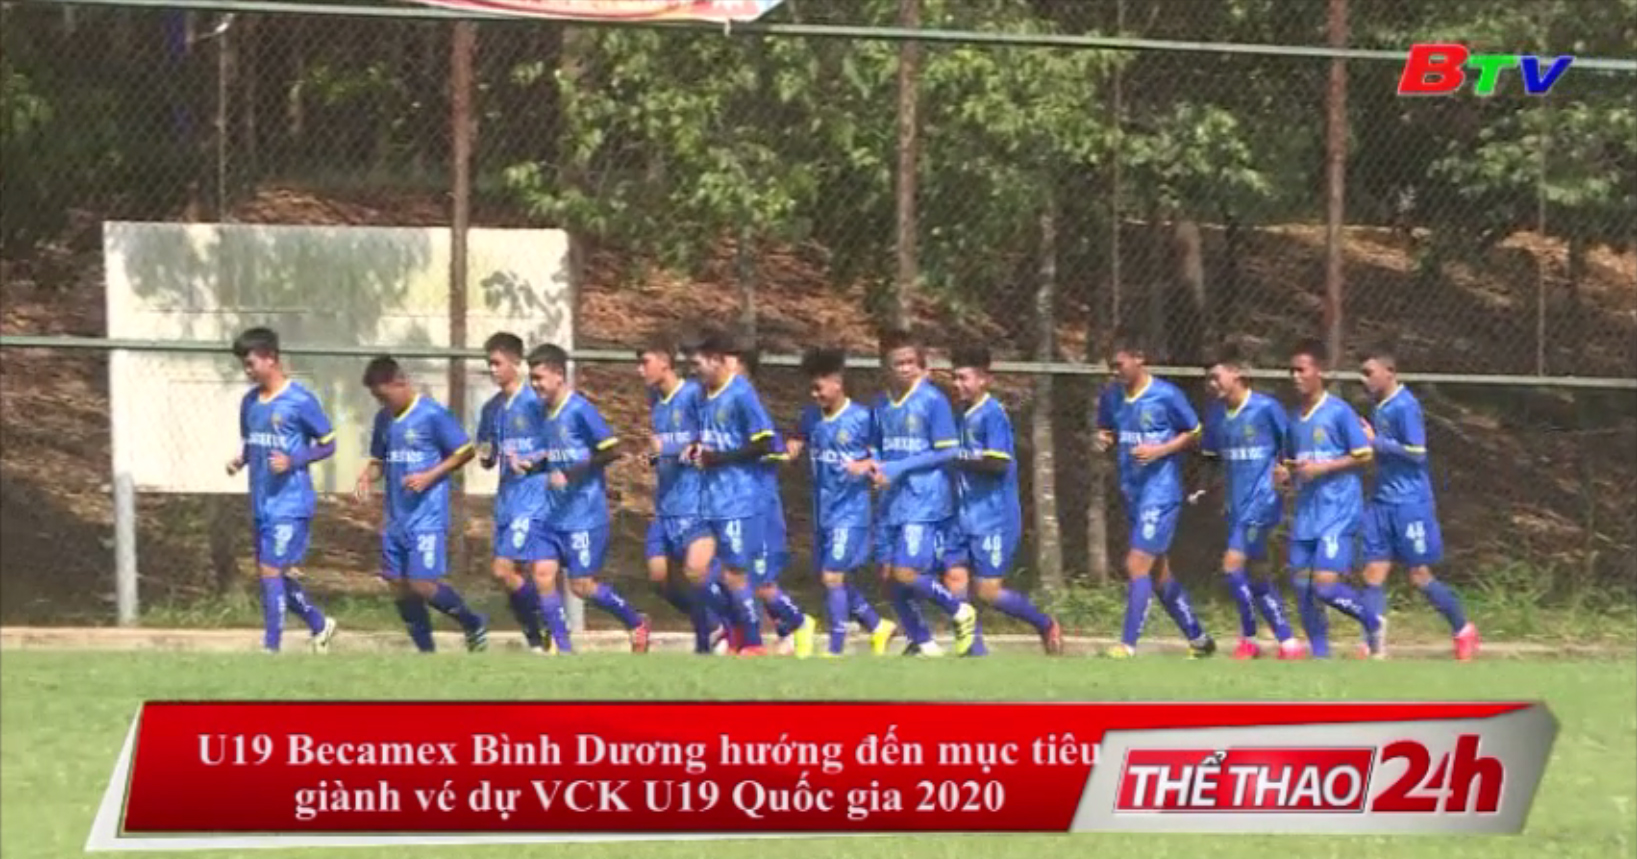 U19 Becamex Bình Dương hướng đến mục tiêu giành vé dự VCK U19 Quốc gia 2020